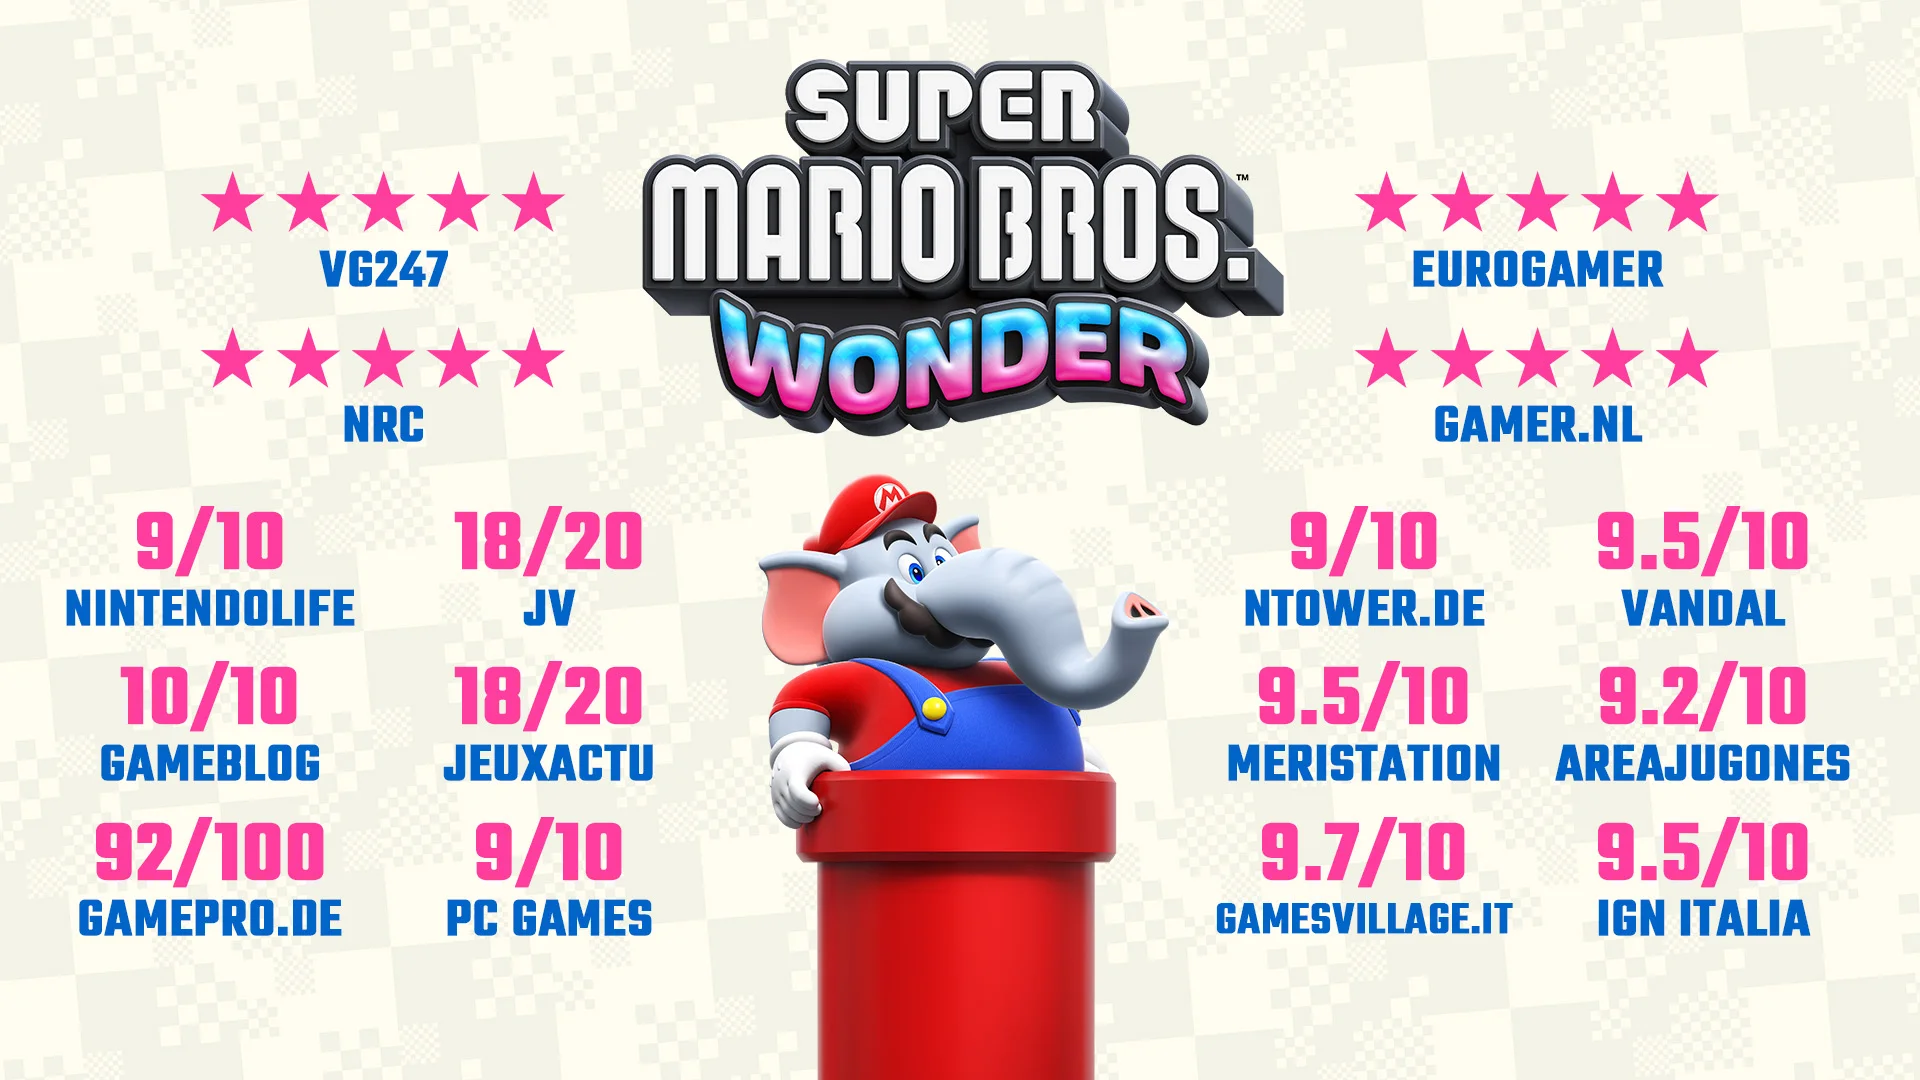 Wonder стала самой быстро продаваемой игрой Super Mario за всю историю в Европе - фото 1